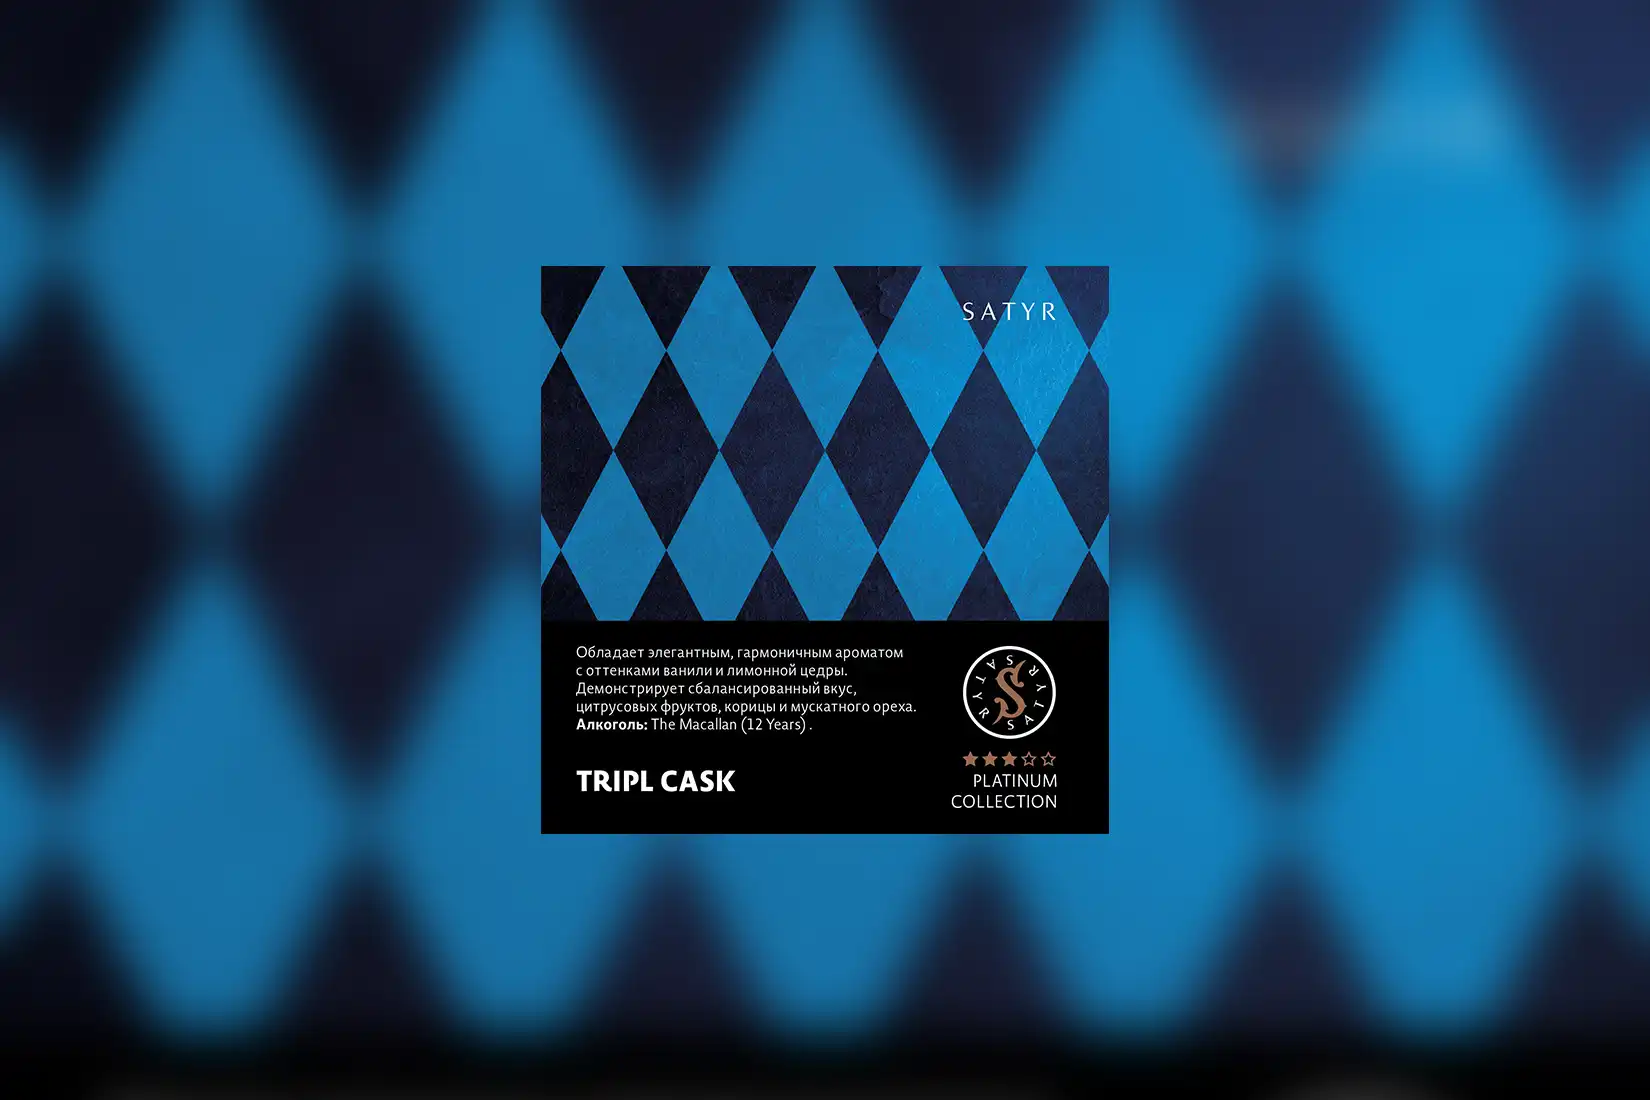 Табак для кальяна Satyr Platinum Collection — TRIPL CASK (The Macallan (12 Years)). Описание и миксы